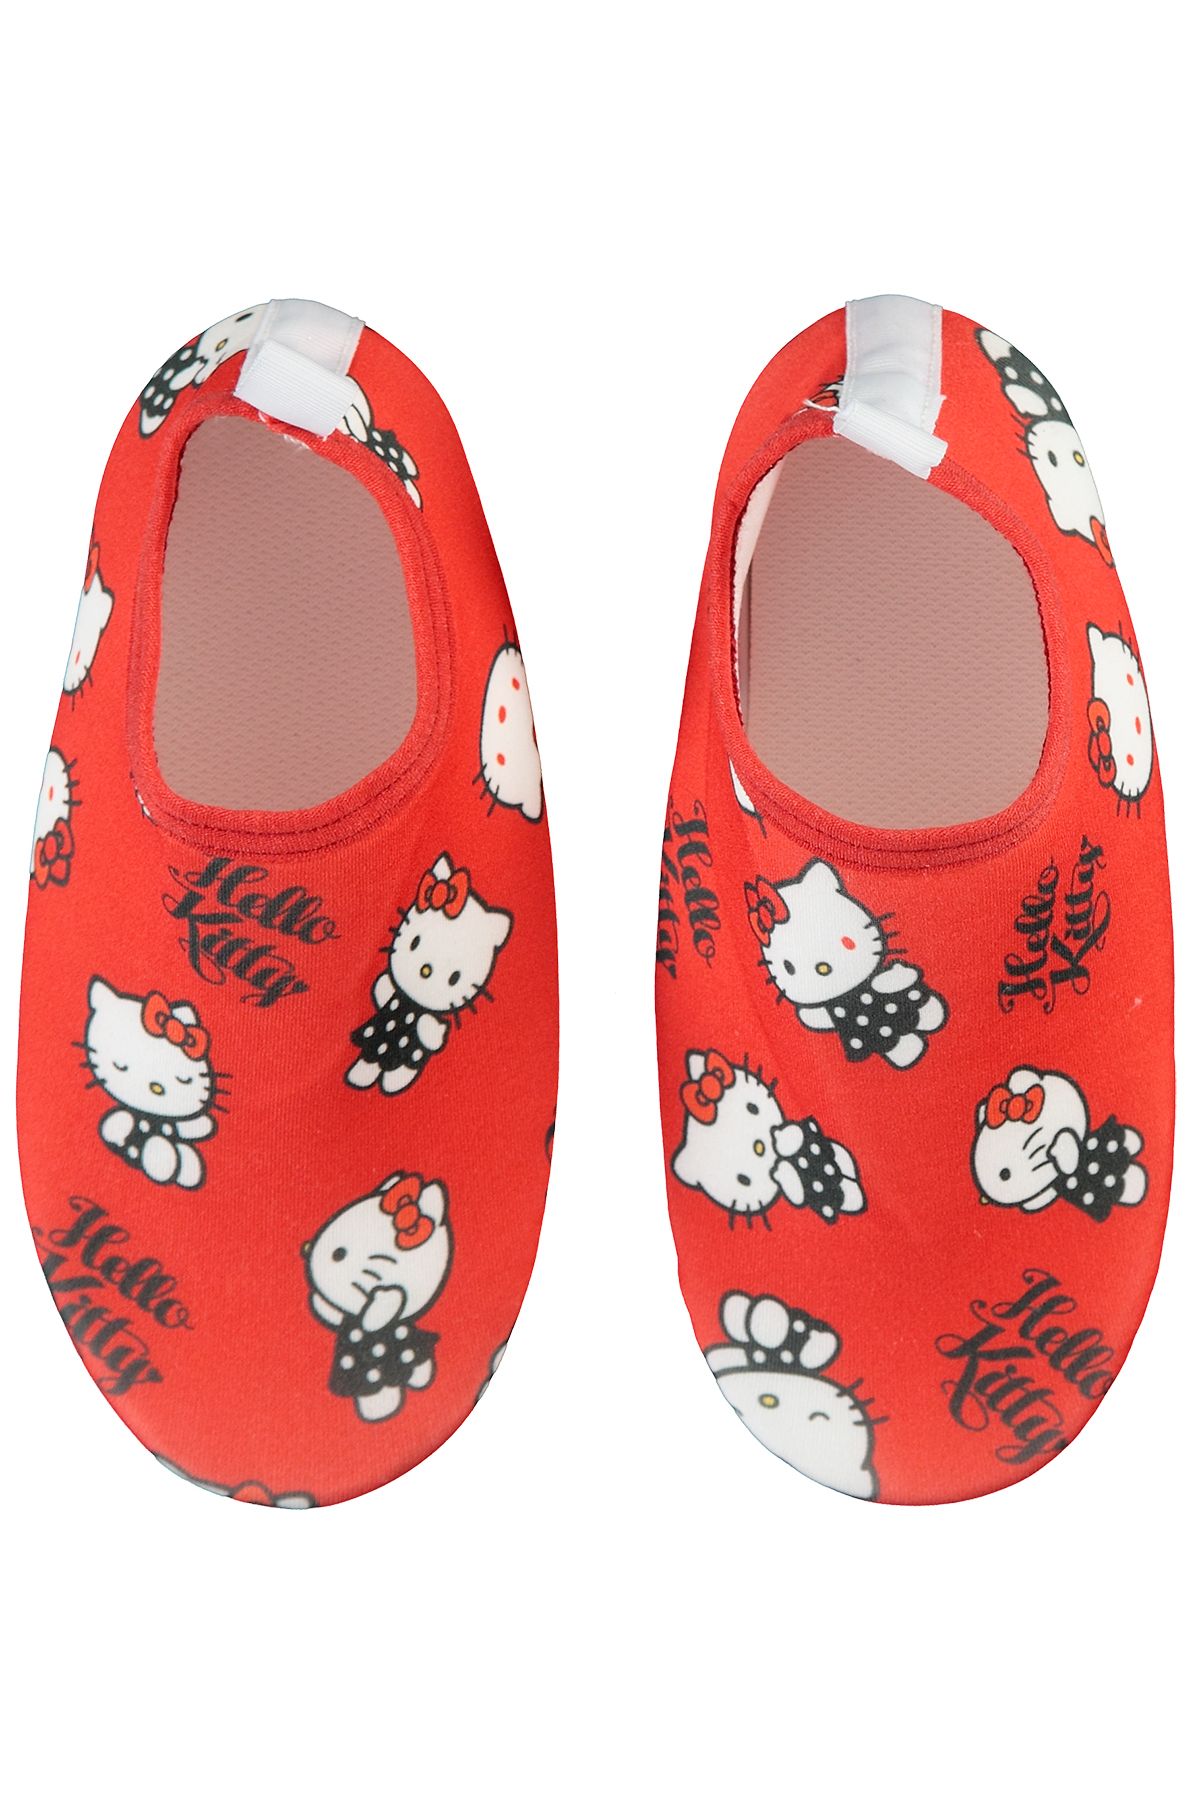 Hello Kitty Kız Çocuk Deniz Ayakkabısı 26-30 Numara Kırmızı